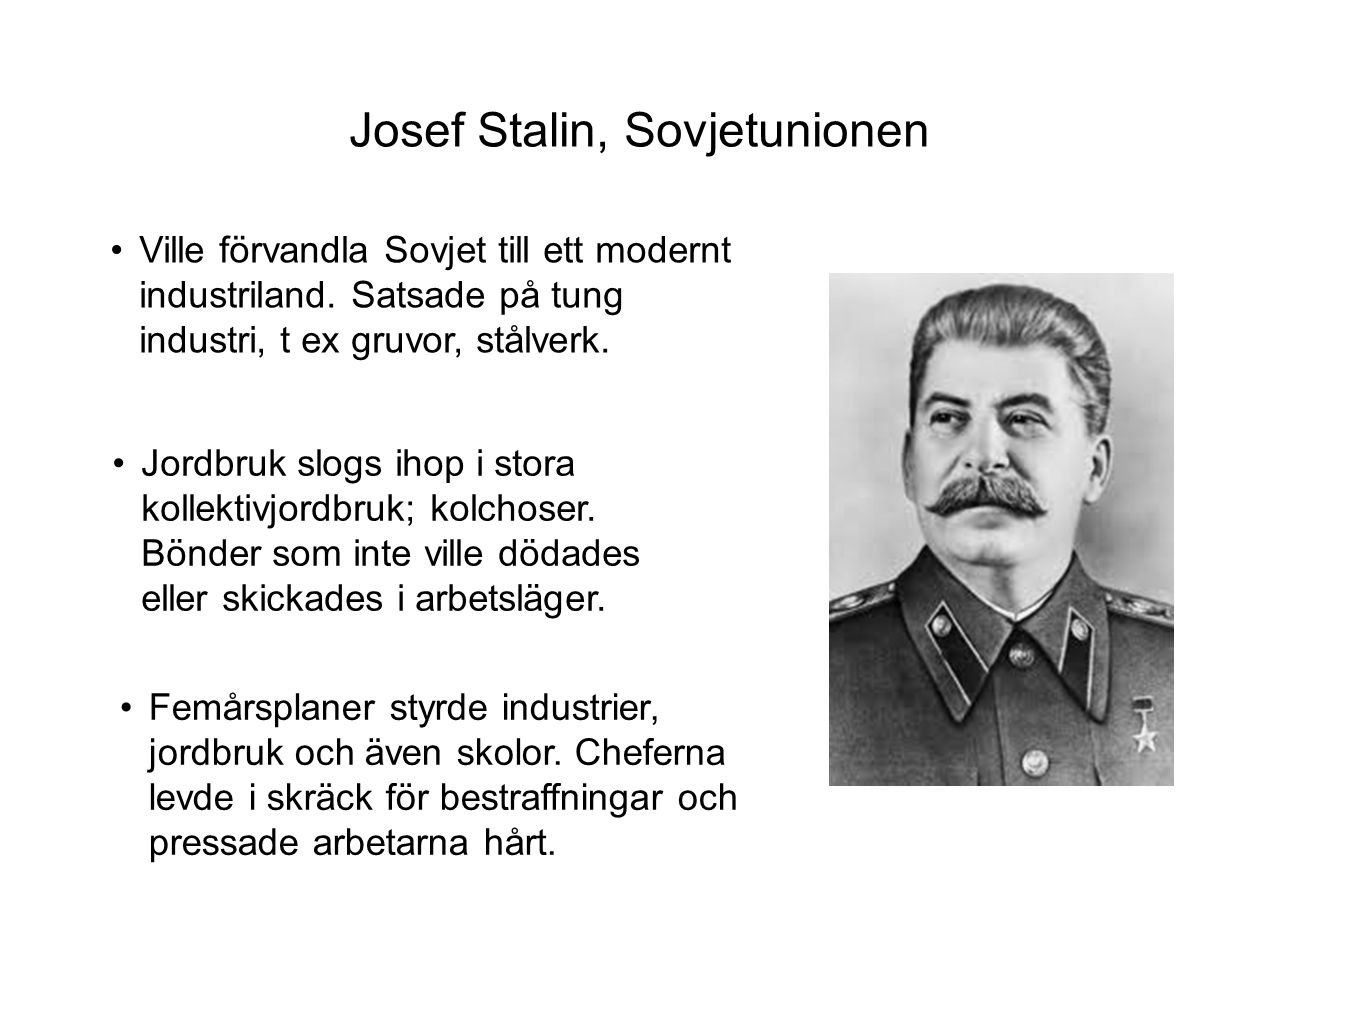 Josef Stalin, Sovjetunionen